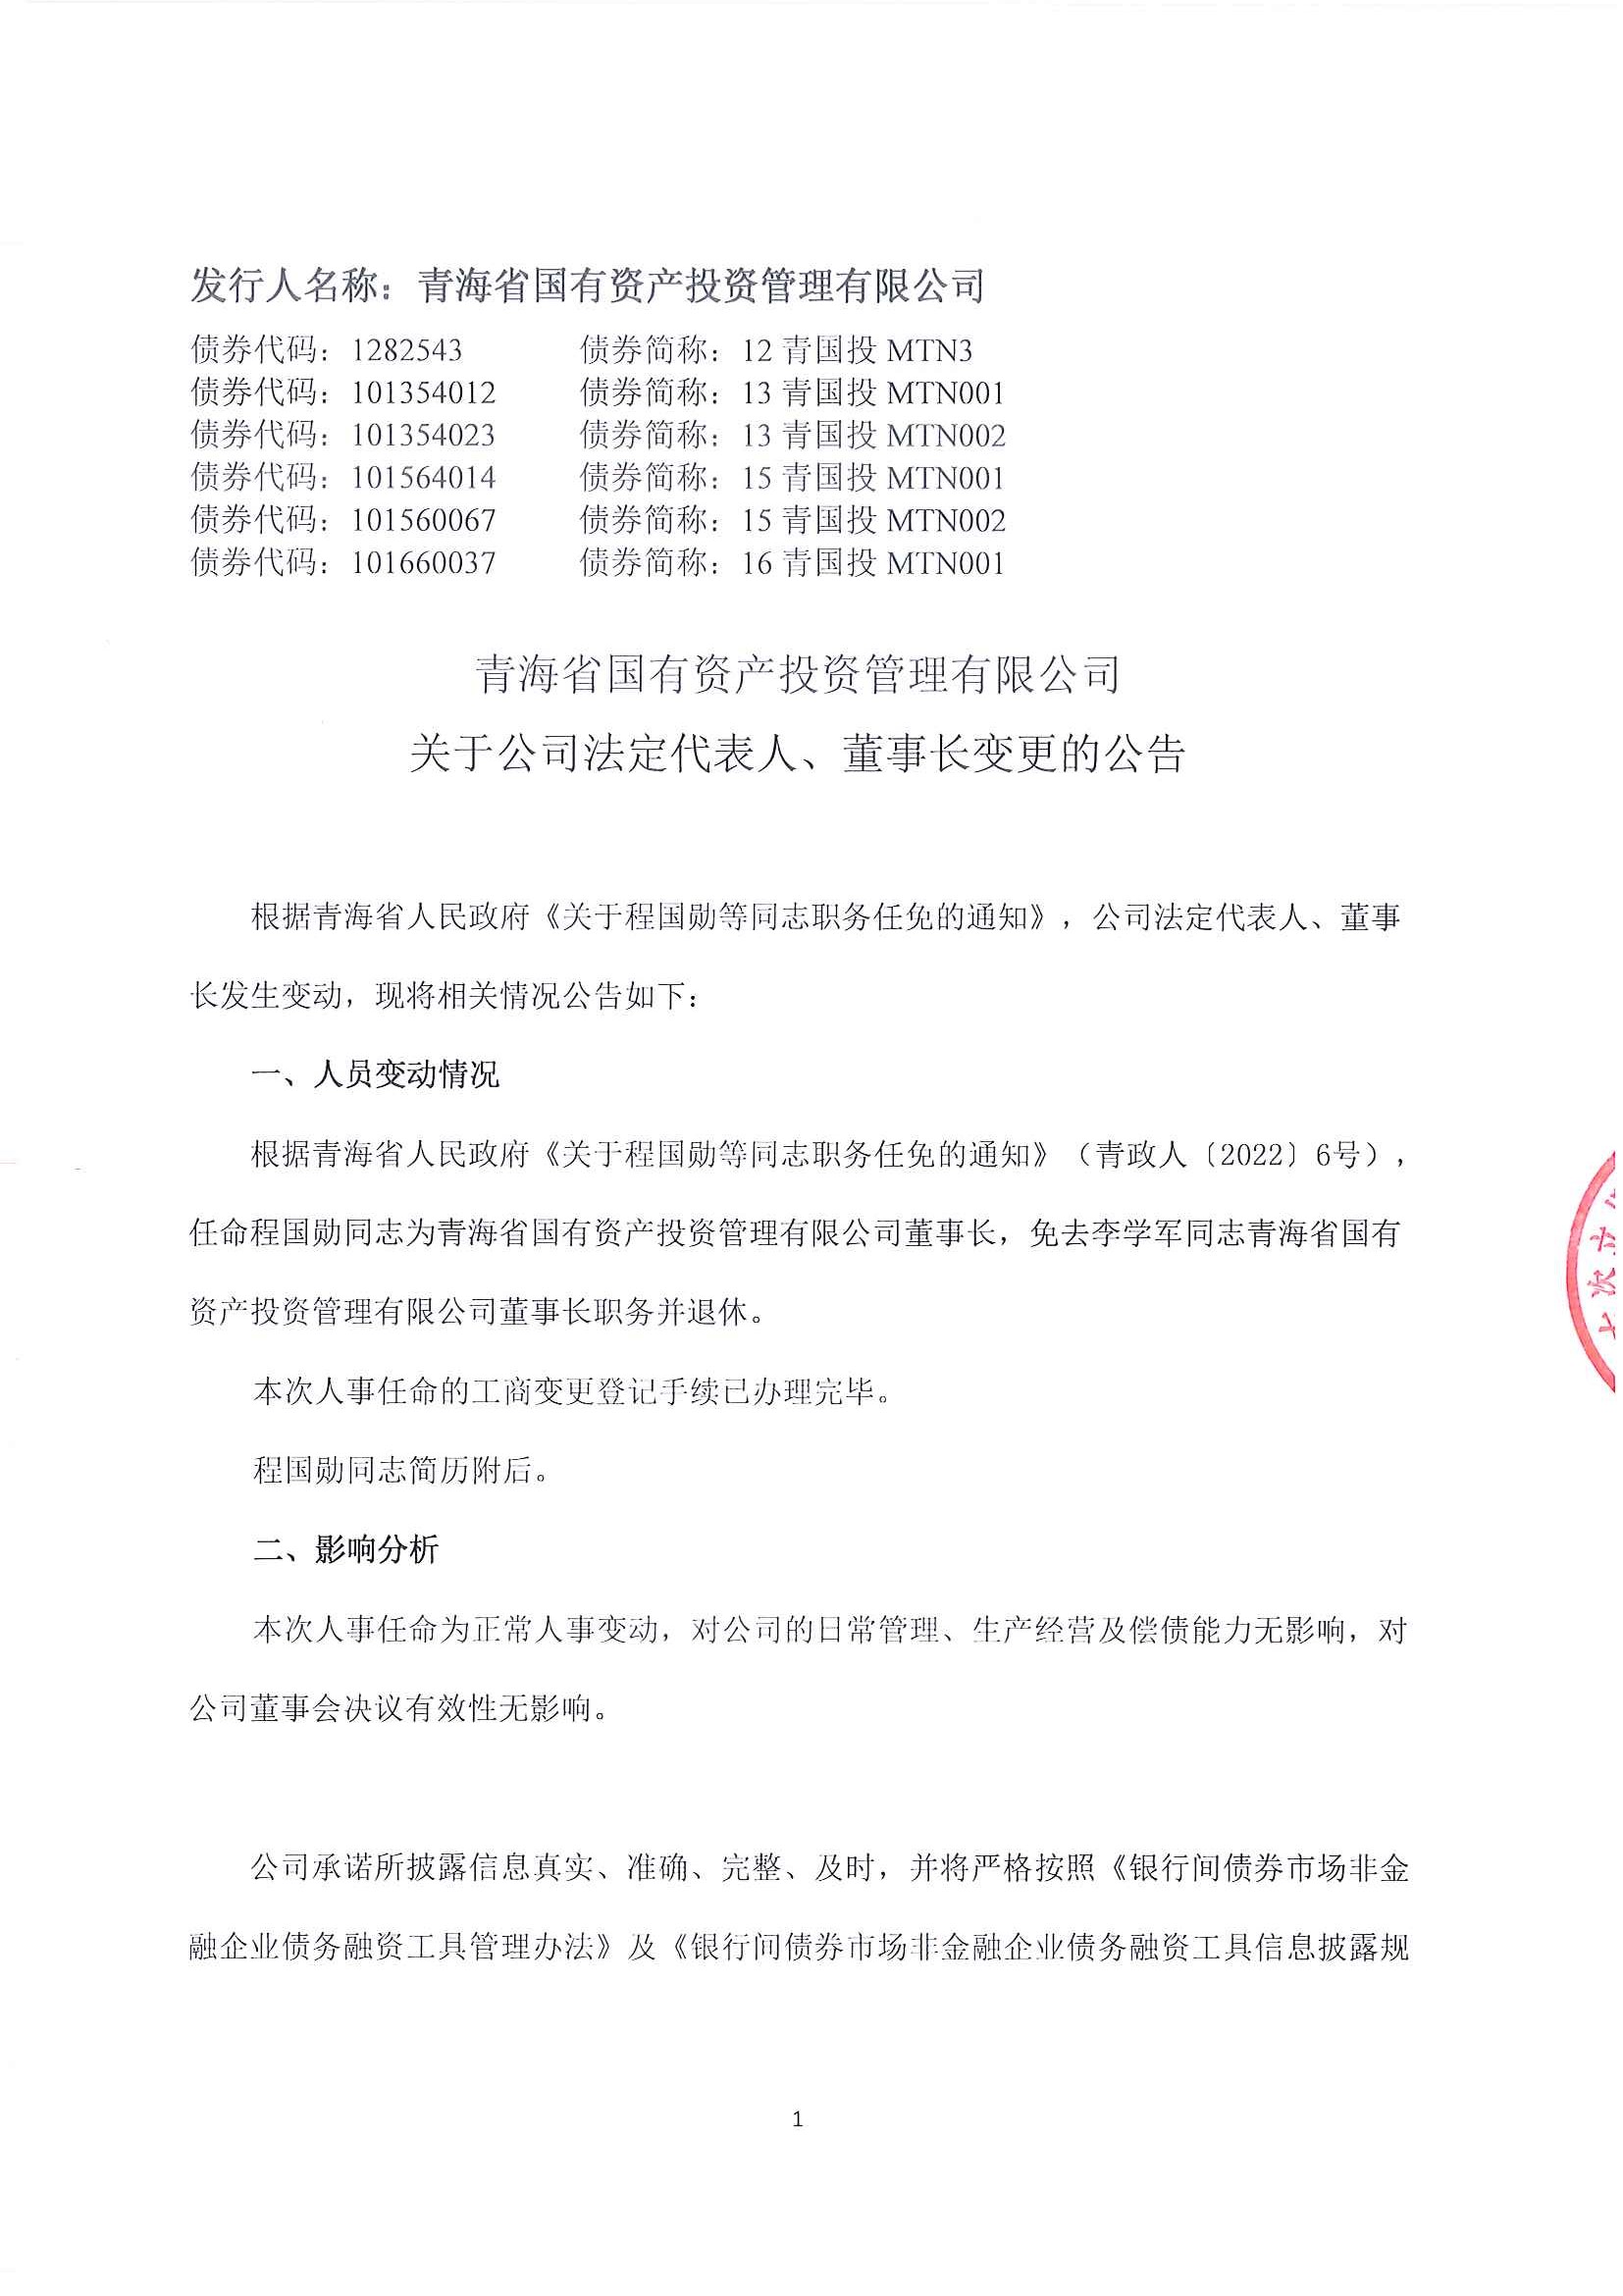 亚娱体育·(中国)官方网站关于公司法定代表人、董事长变更的公告